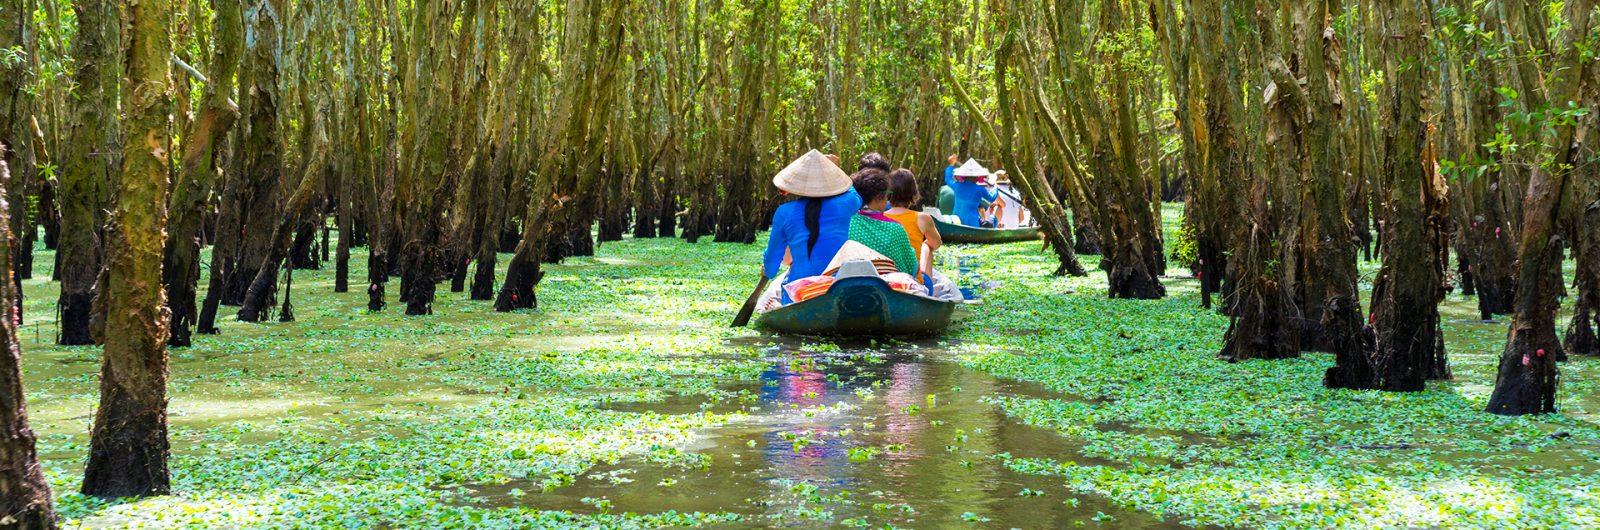 2021 Vietnam & Cambodia Mekong River Cruise